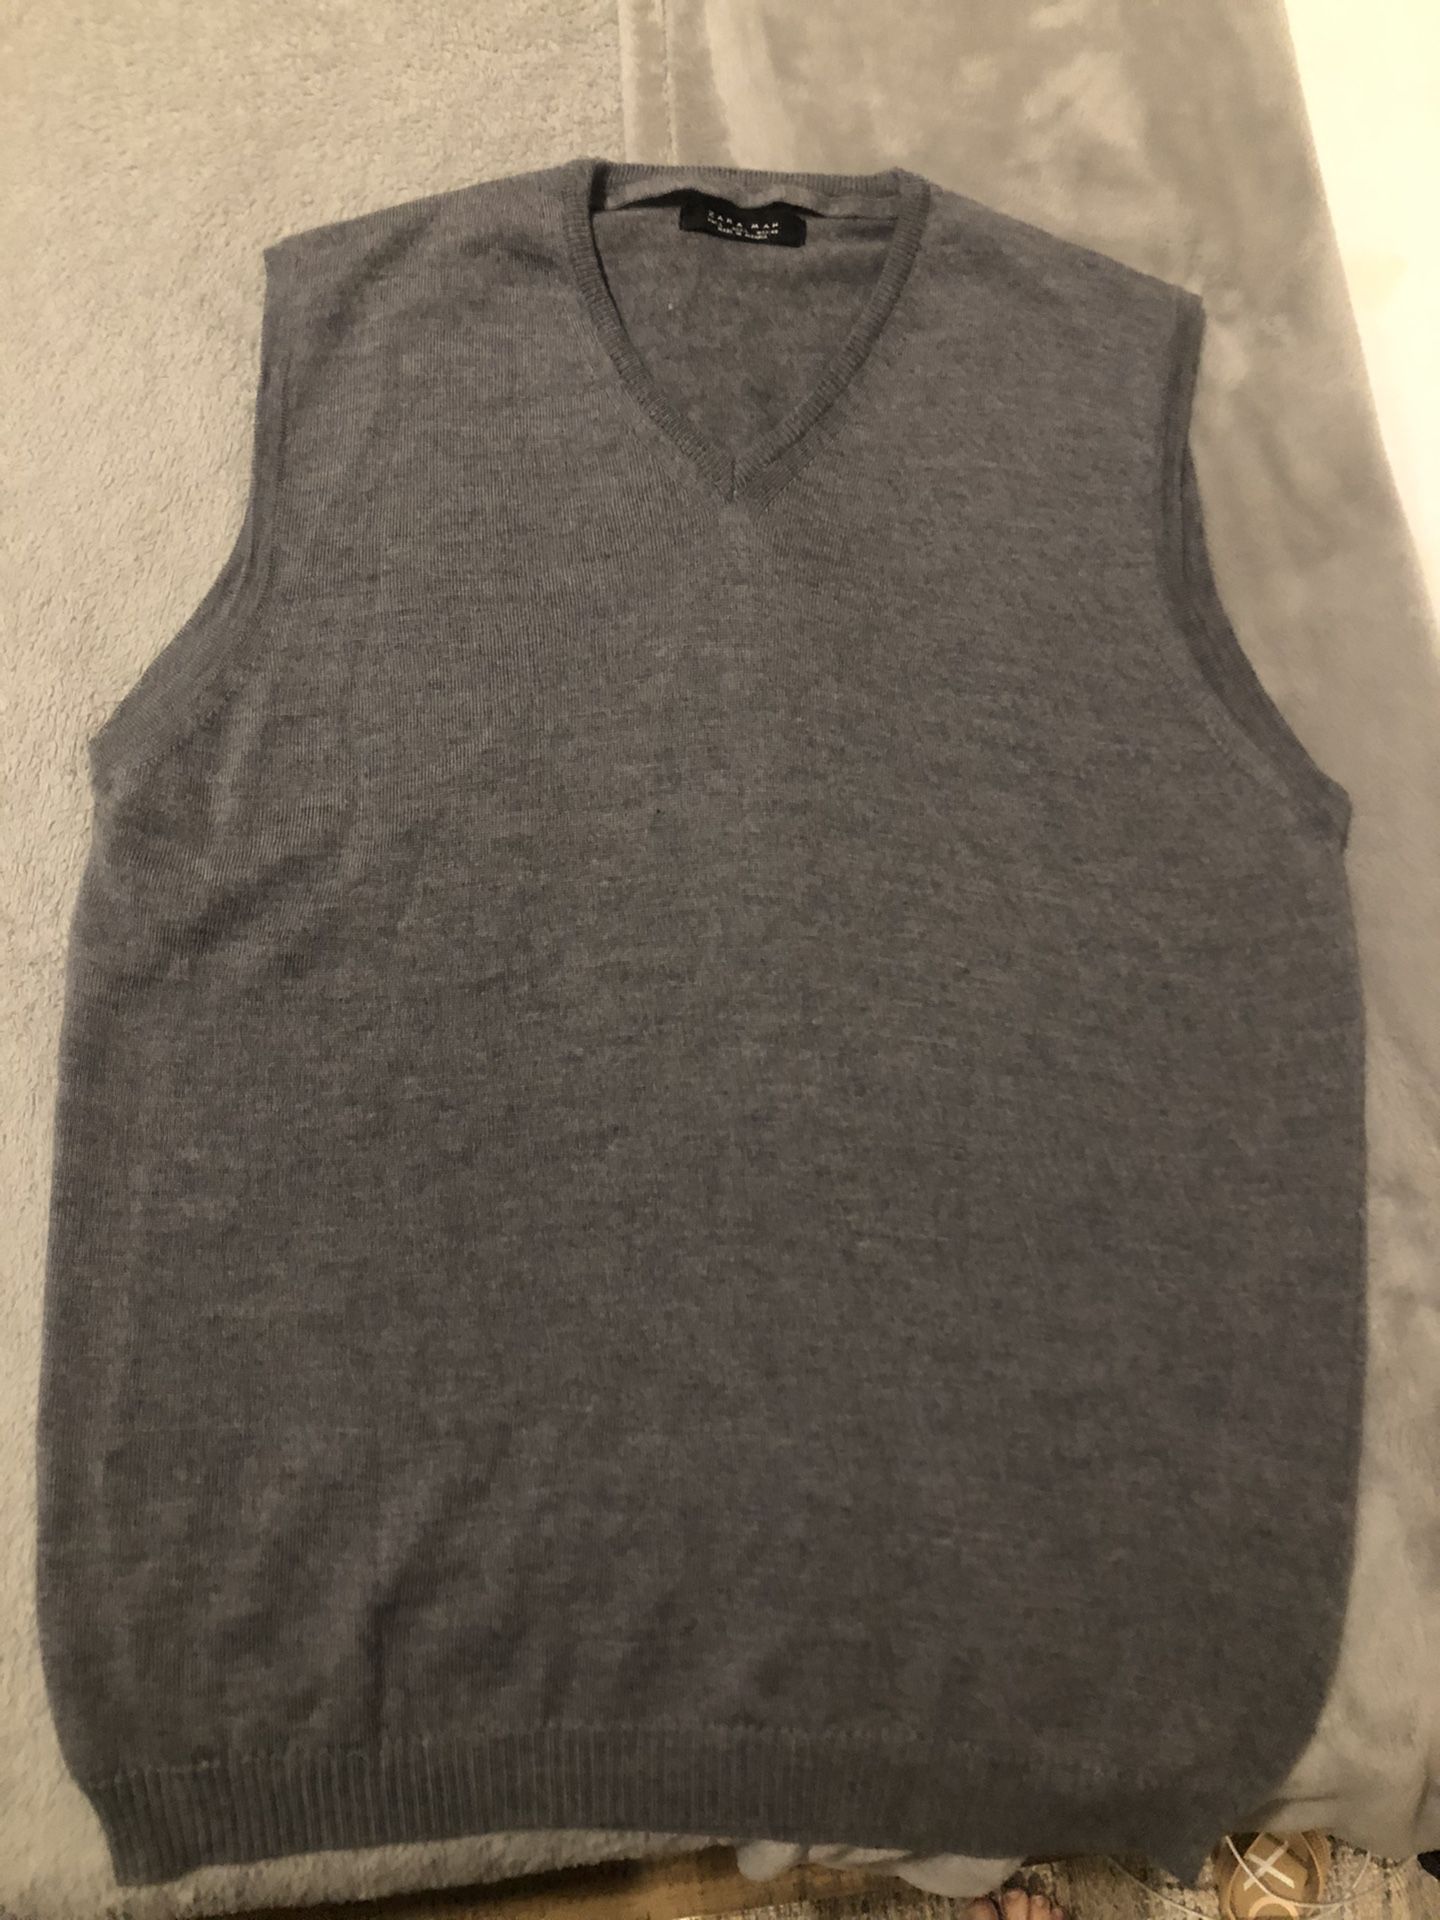 Sweater vest MEN Size L 